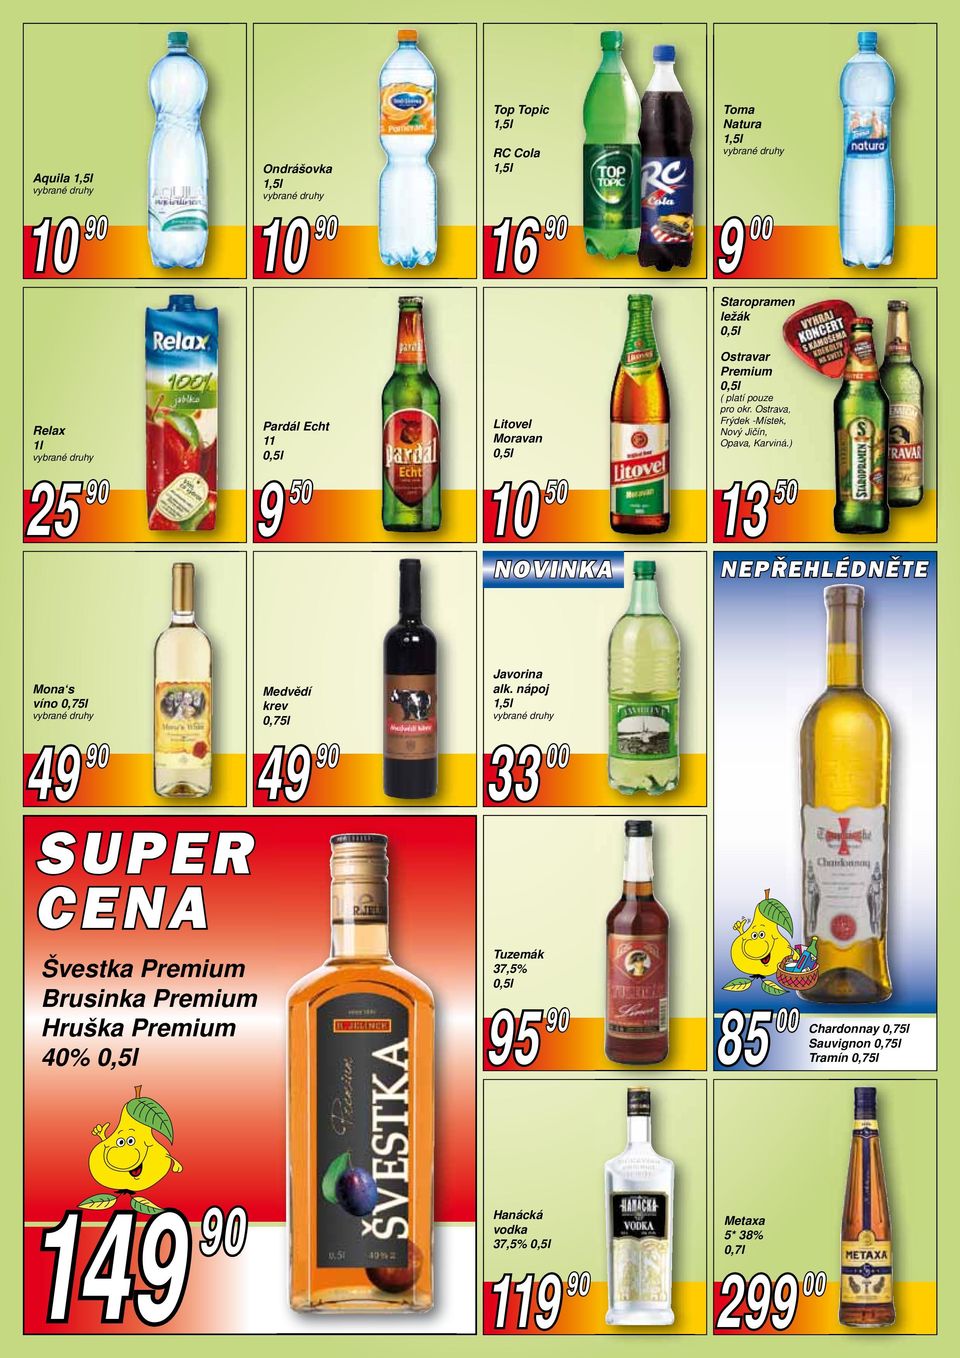 ) 13 50 NEPŘEHLÉDNĚTE Mona s víno 0,75l 49 90 SUPER CENA Švestka Premium Brusinka Premium Hruška Premium 40% Medvědí krev 0,75l 49 90